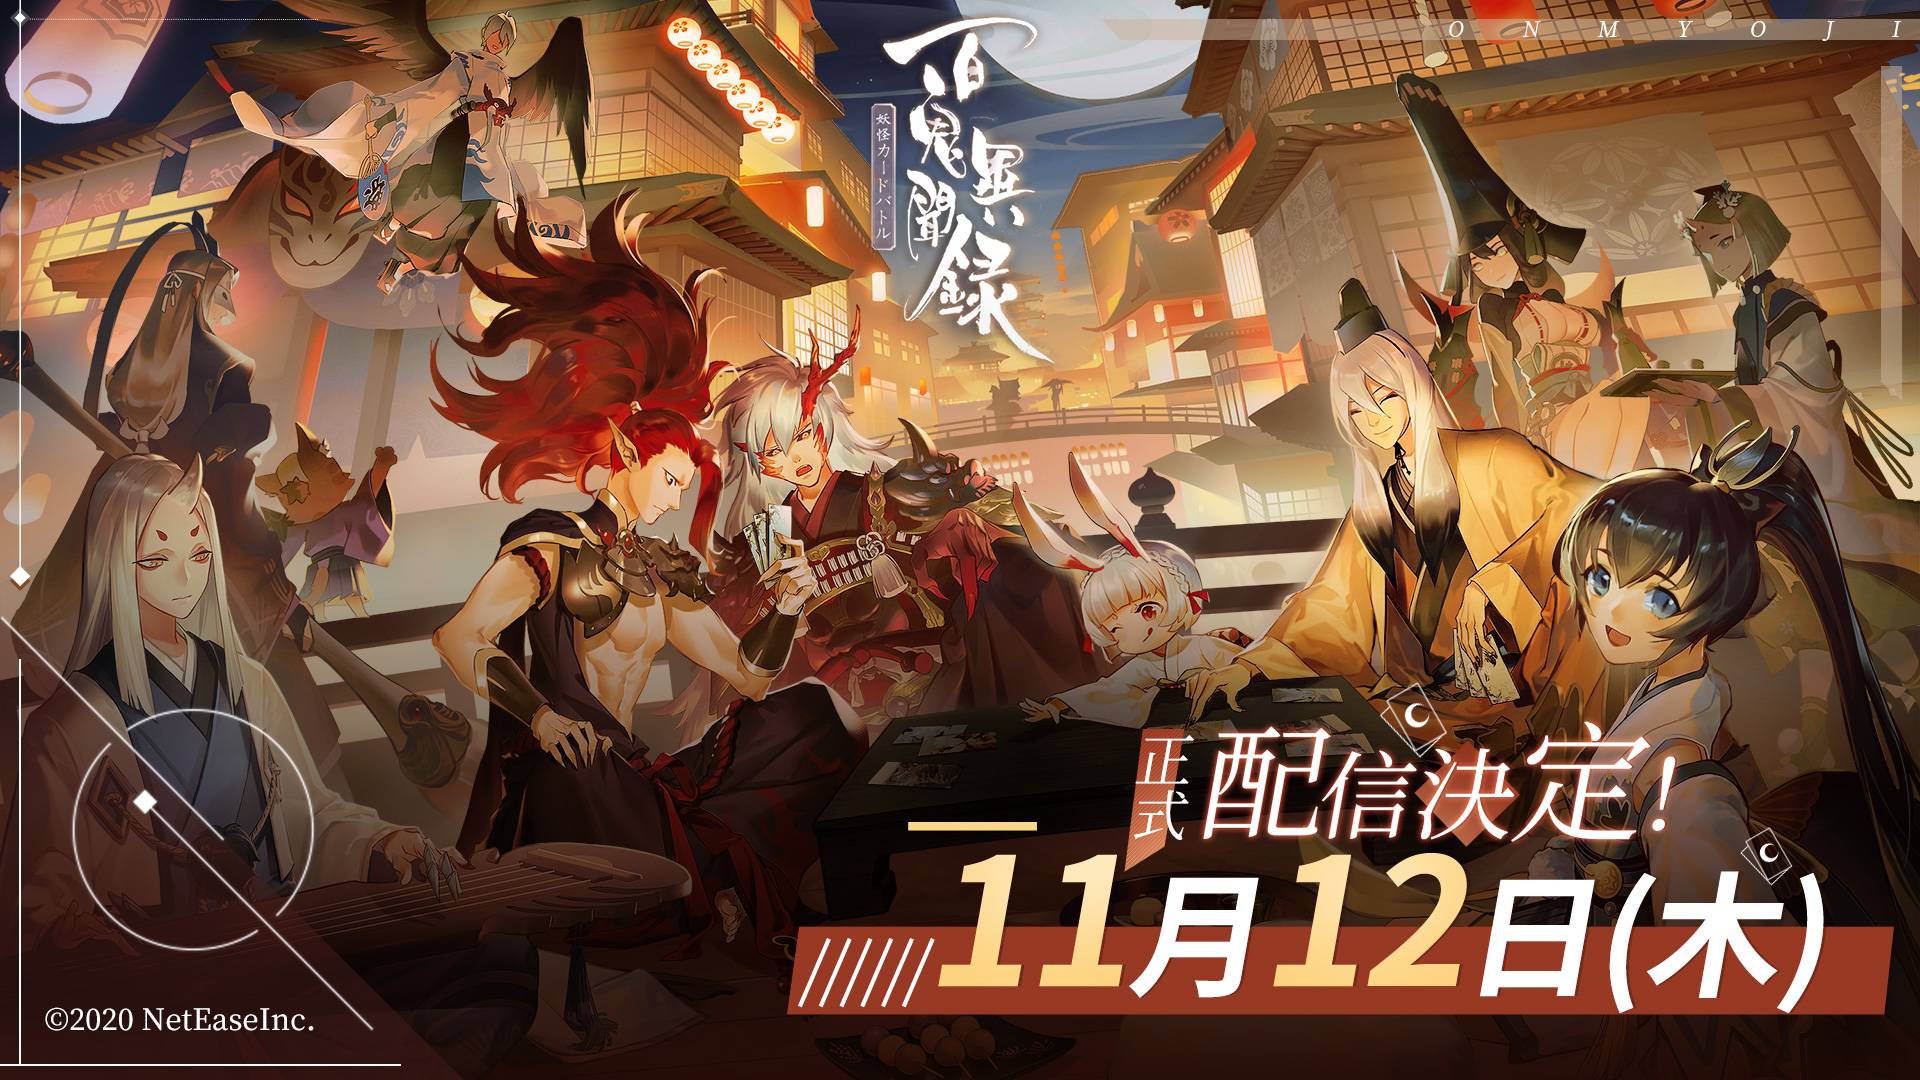 【ゲーム速報】NetEase Gamesが手掛けた「陰陽師本格幻想RPG」のIPを使った新作ゲーム『百鬼異聞録～妖怪カードバトル～』が2020年11月12日に配信決定と発表されました。